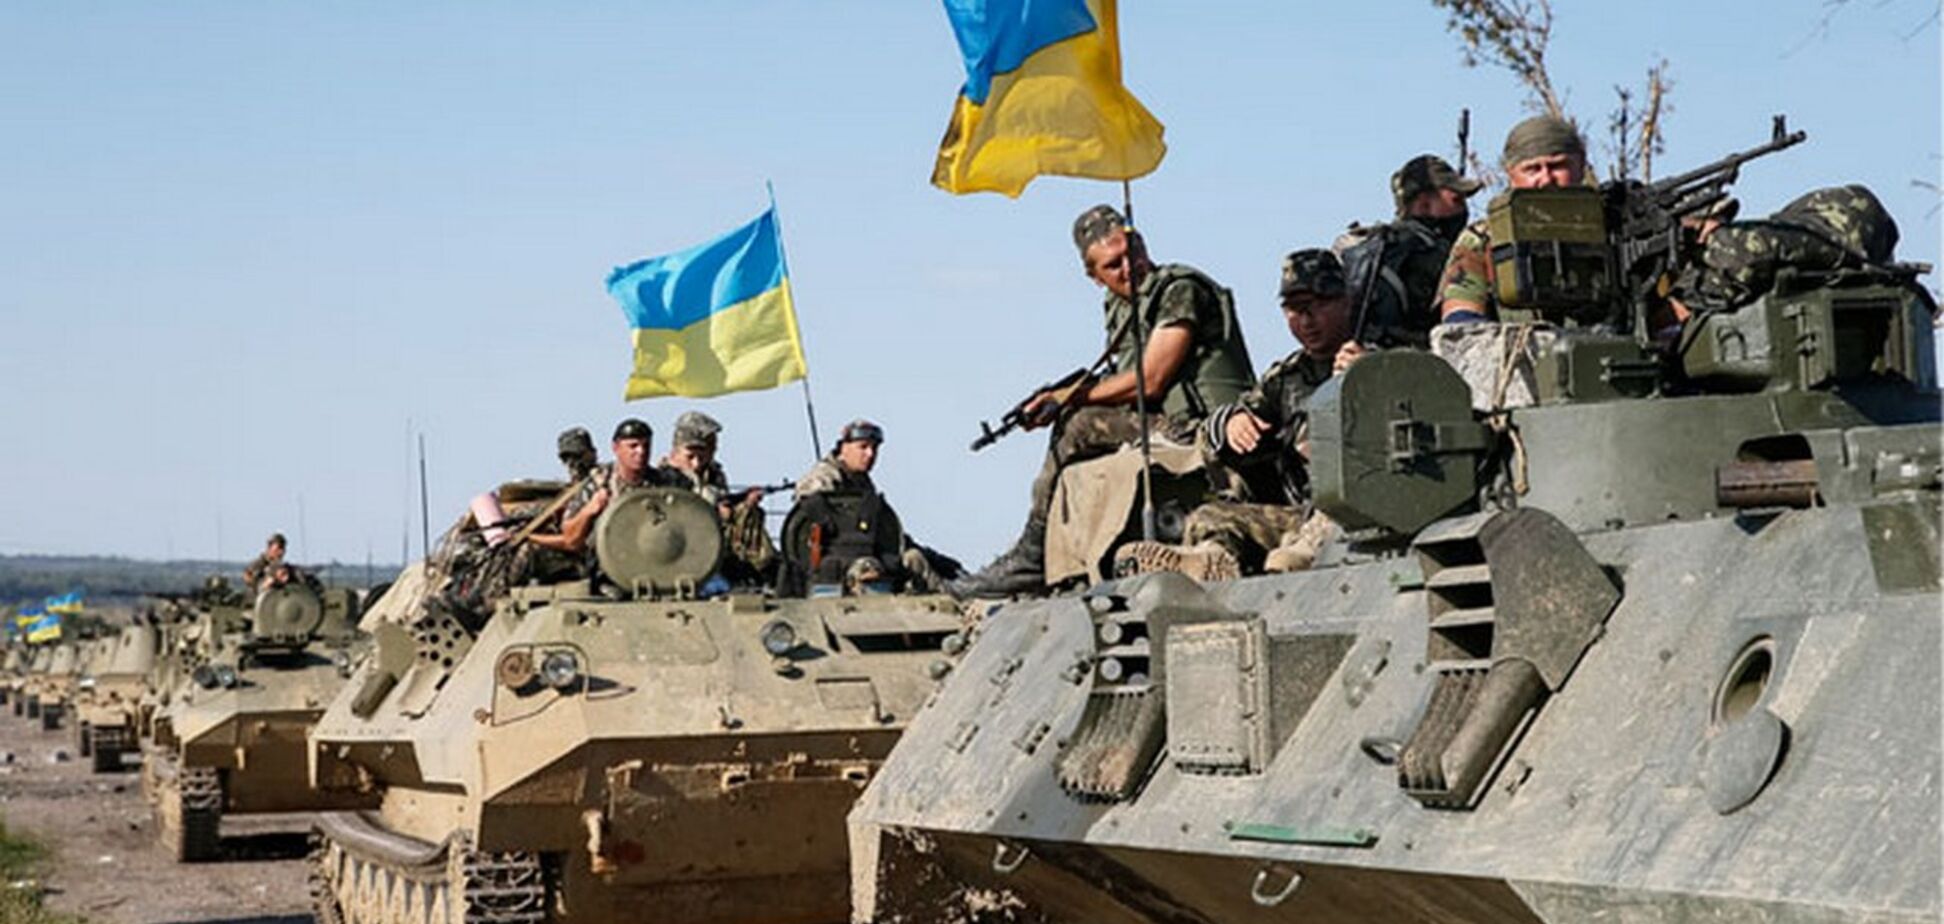 ЗСУ потужно відповіли на провокацію окупантів на Донбасі: зведення штабу ООС